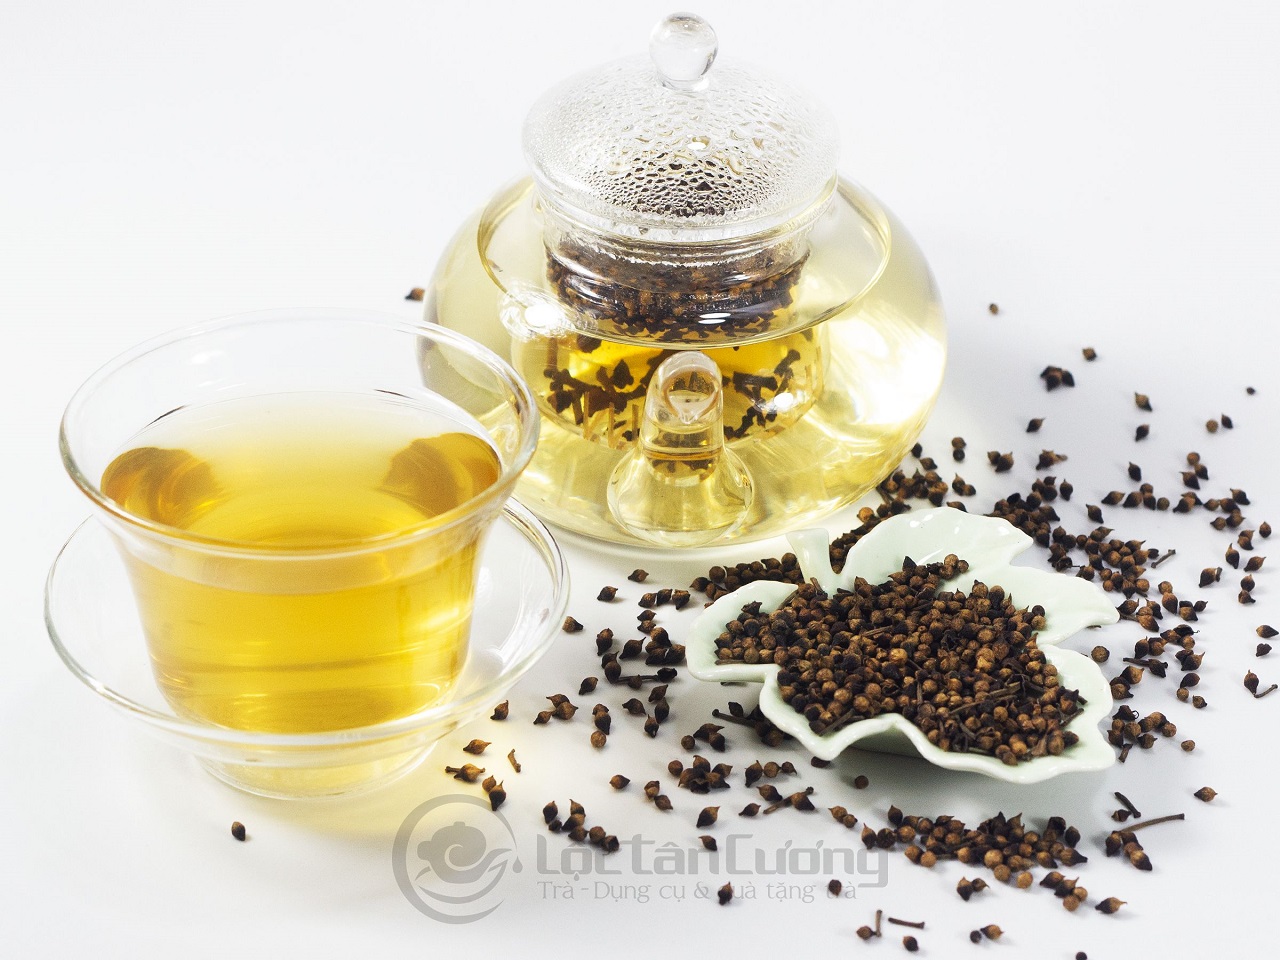 Nụ Vối thu hoạch làm trà uống rất thơm ngon và tốt cho sức khỏe, nhất là người lớn tuổi và những bạn trẻ hay bị nóng trong người